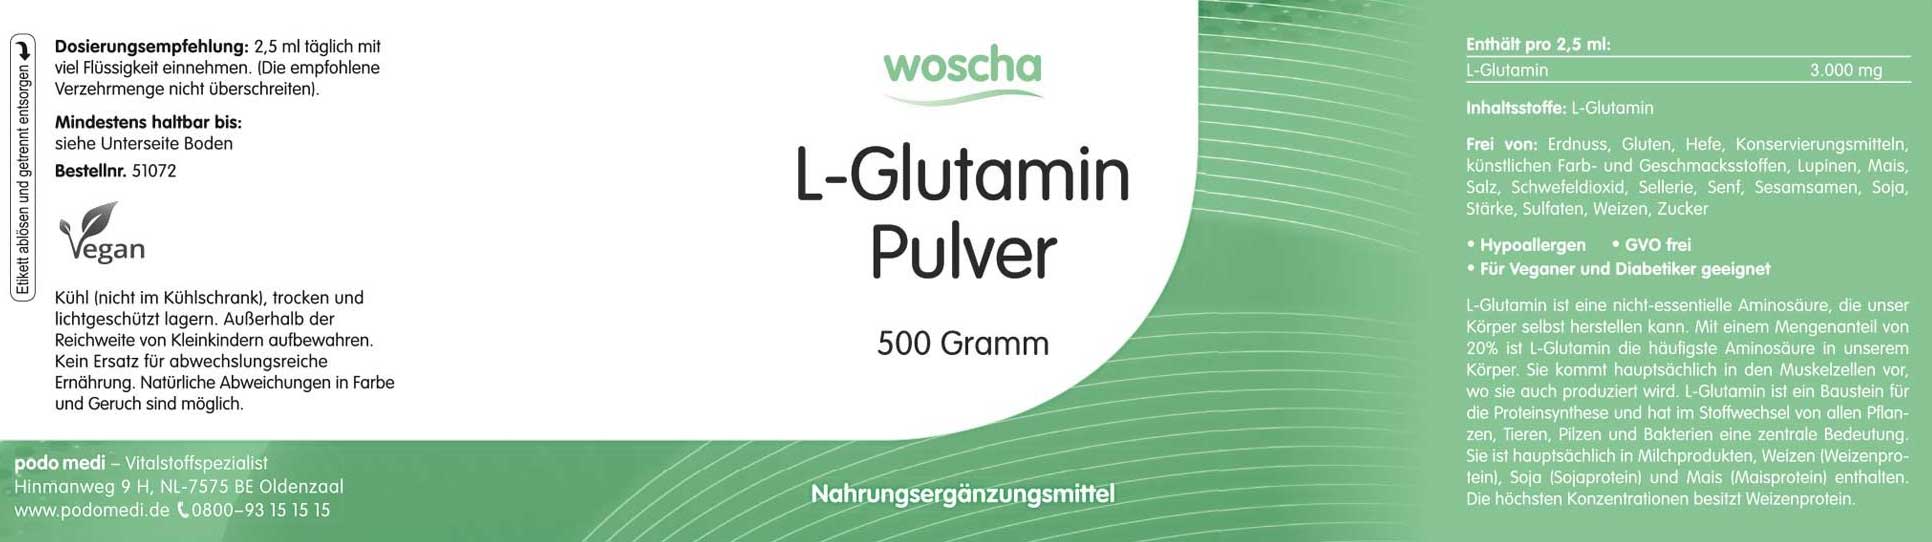 Woscha L-Glutamin von podo medi beinhaltet 500 Gramm Pulver Etikett